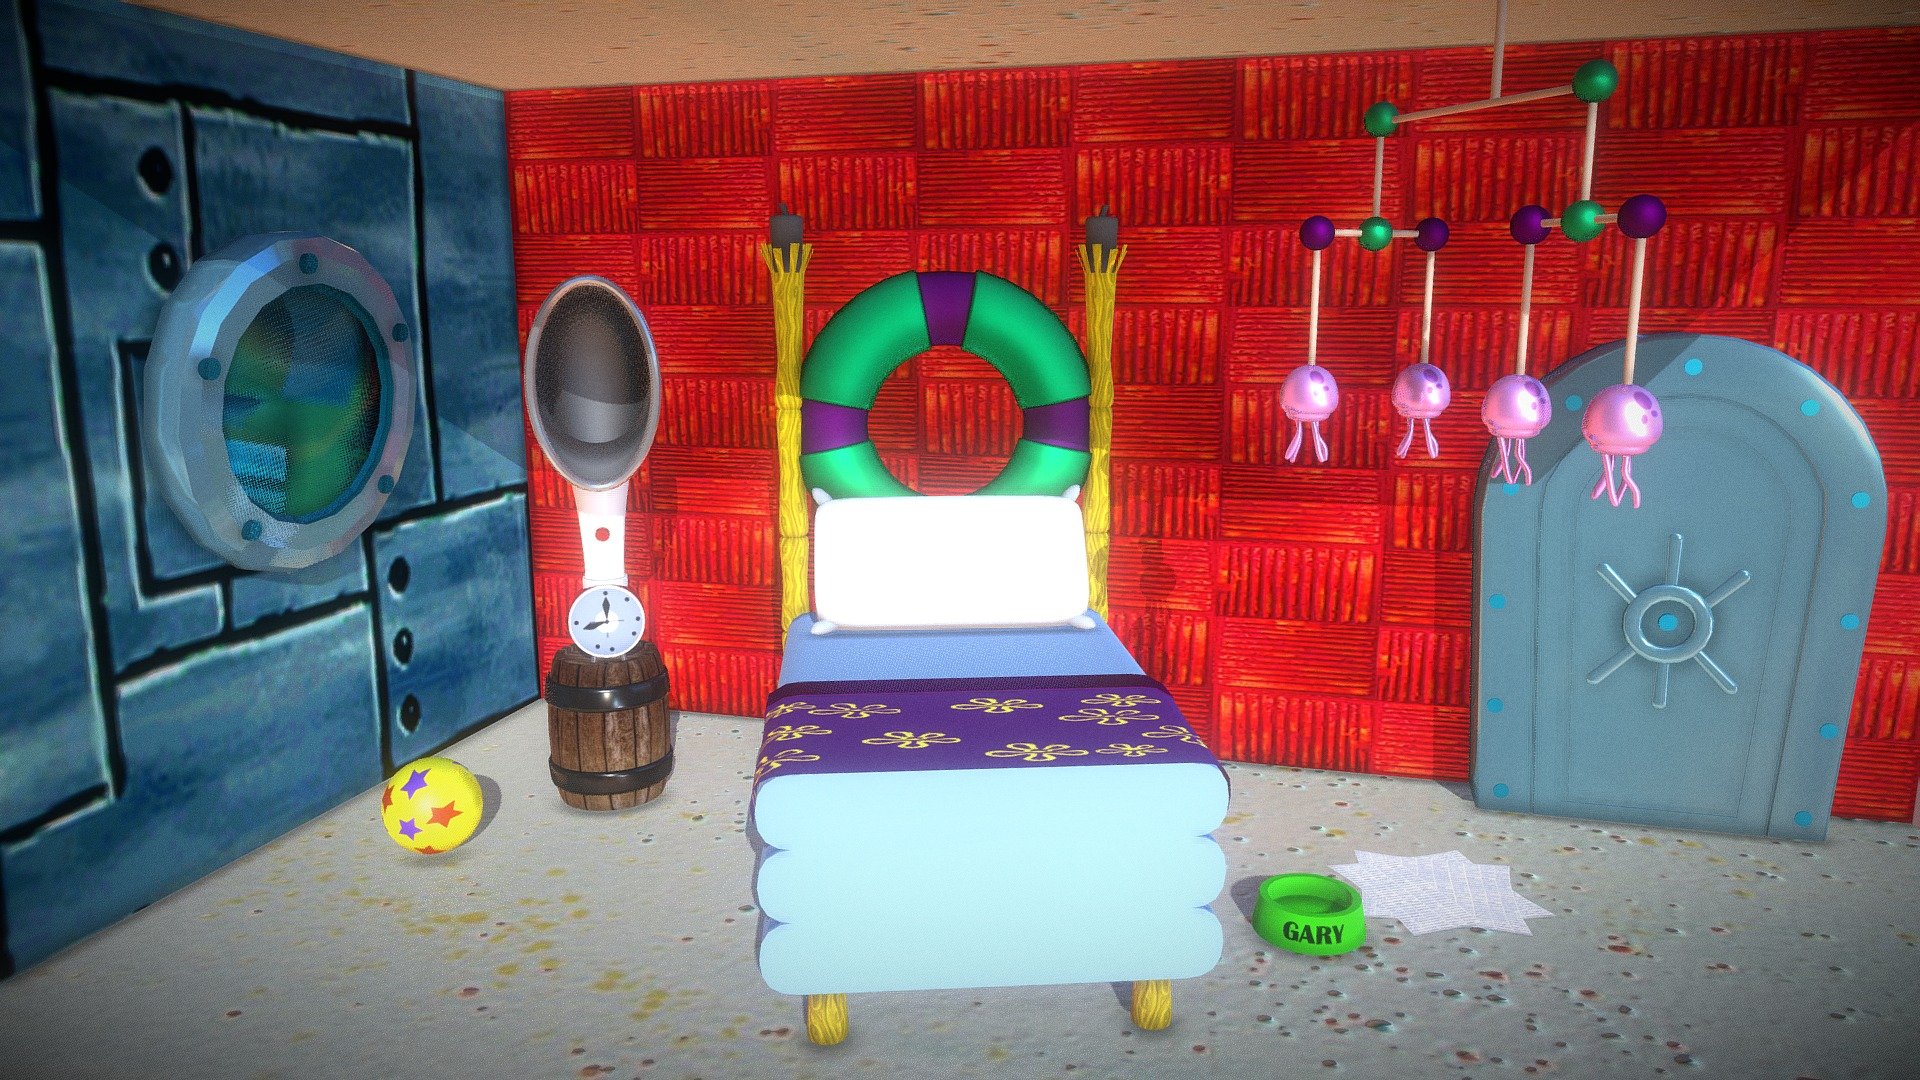 Spongebob's Bedroom